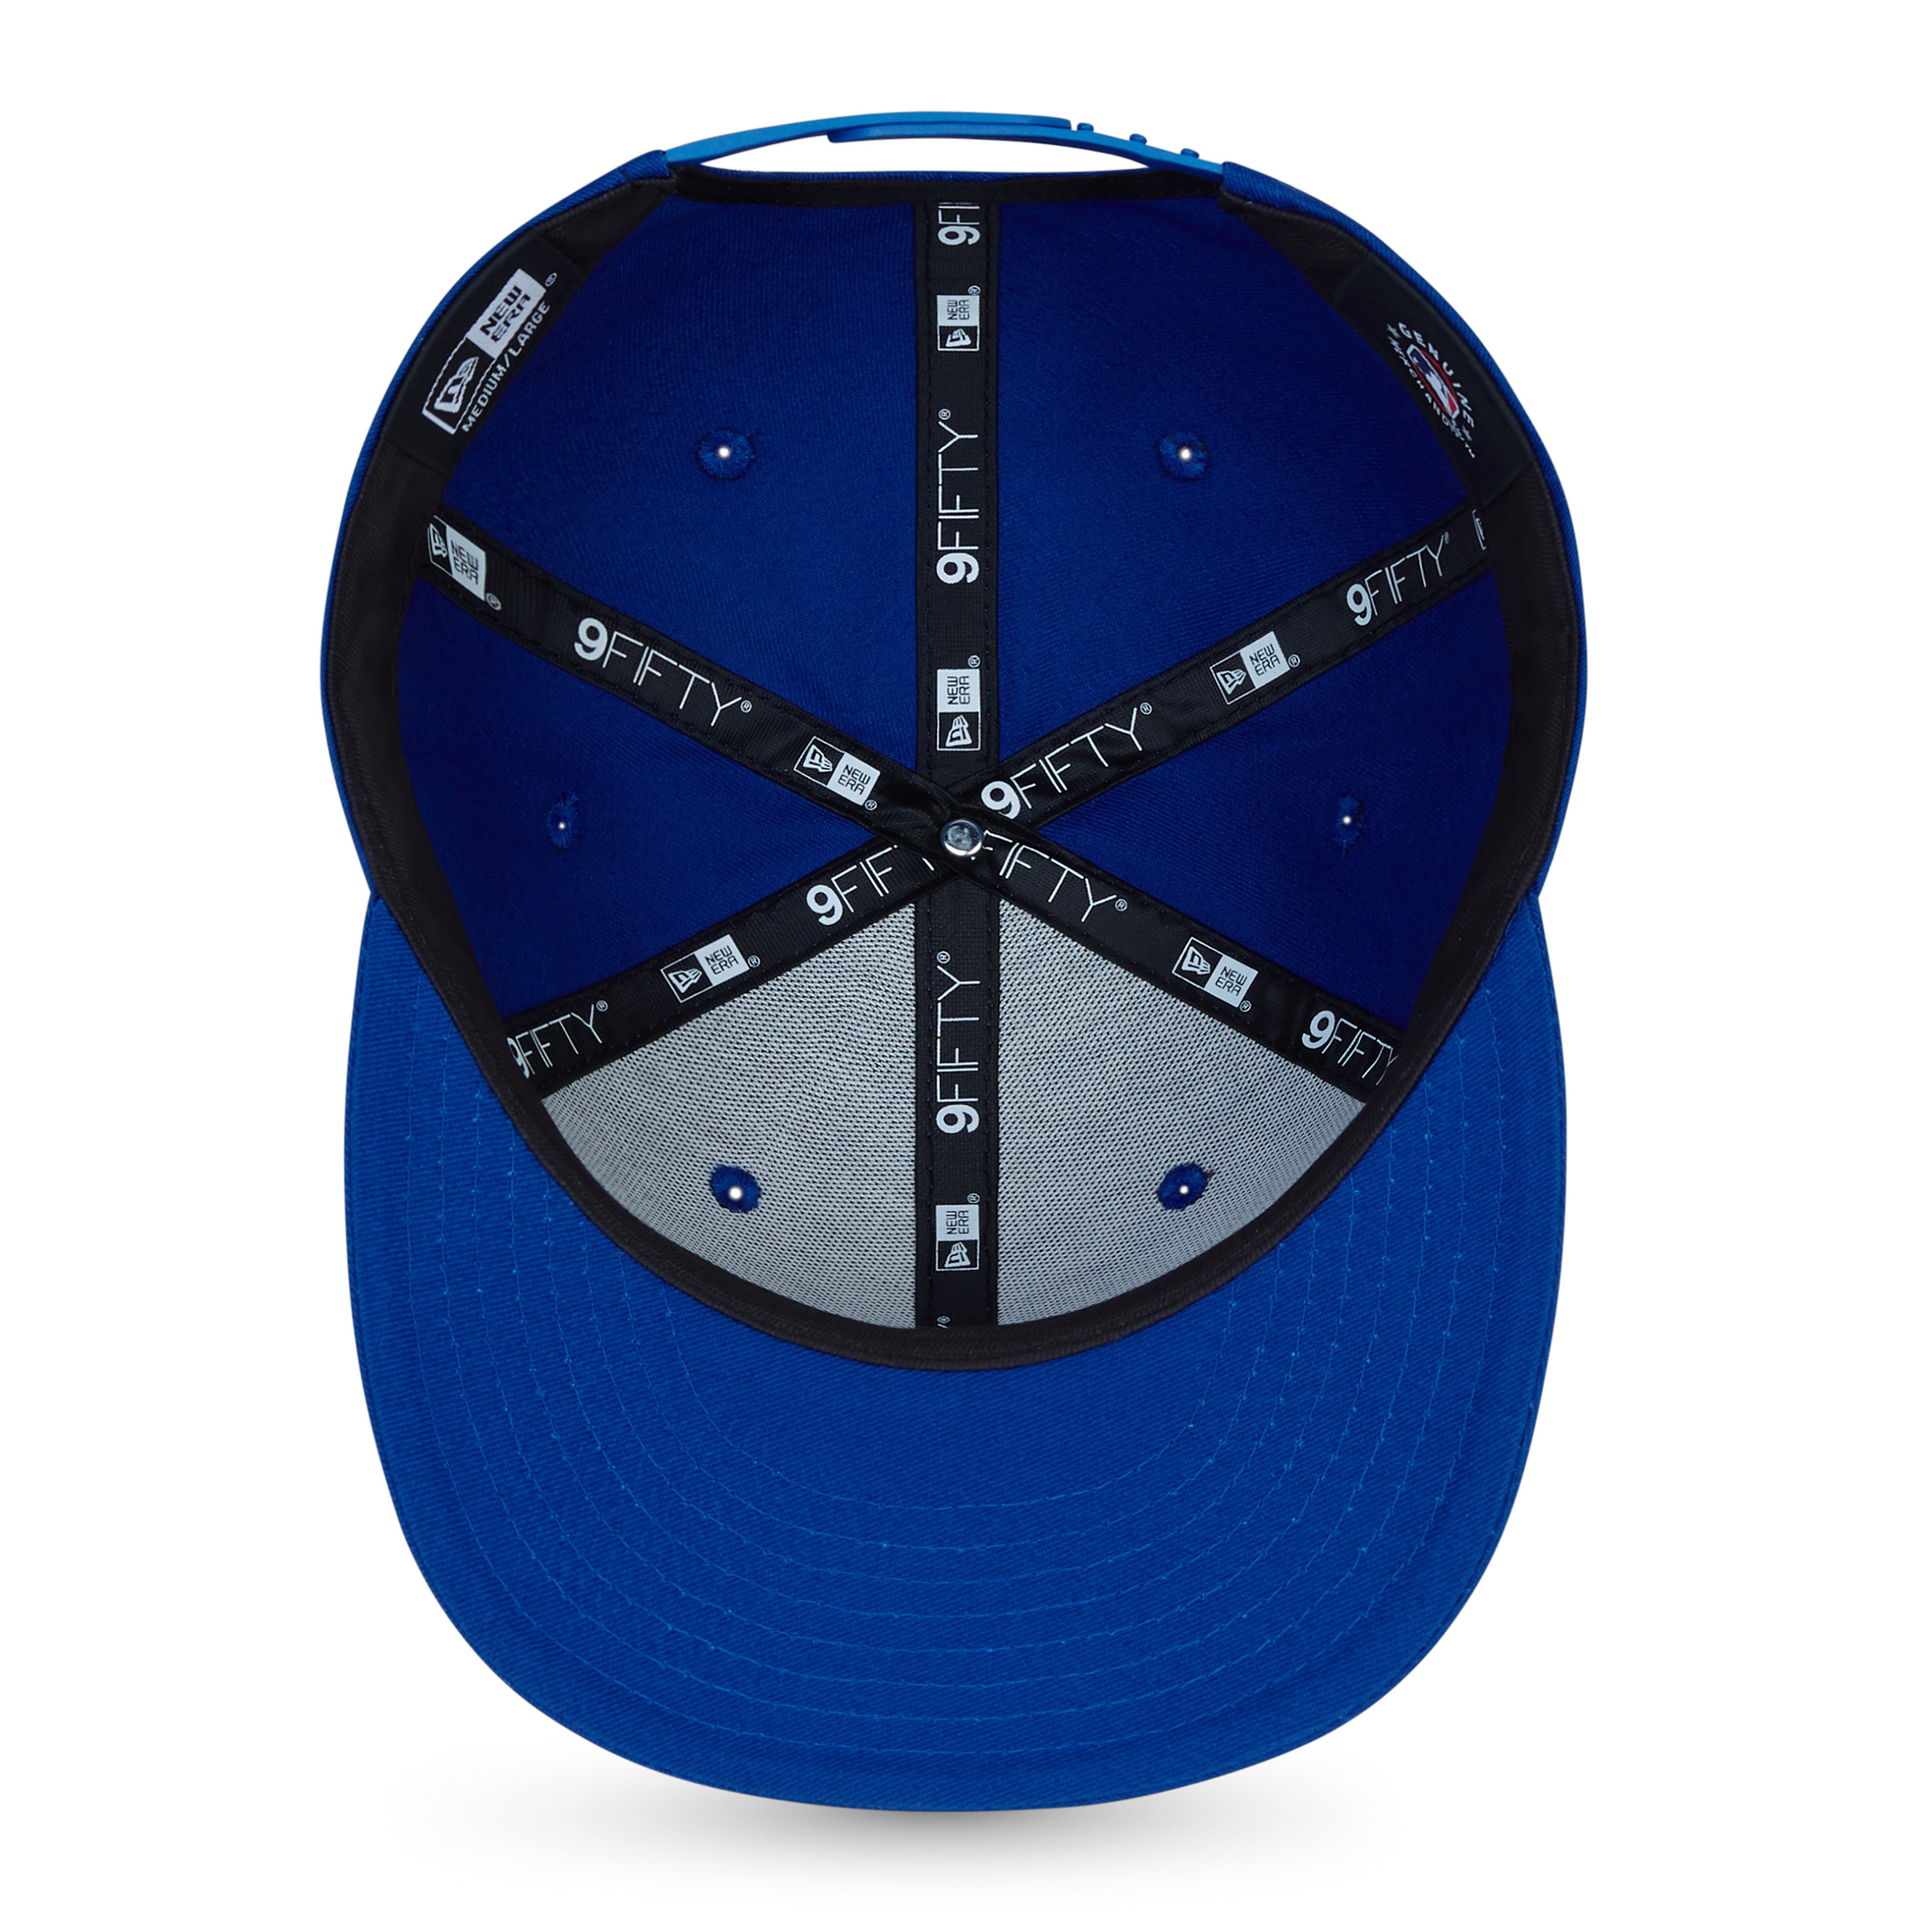 New York Mets MLB Essentials Blue 9Fifty Snapback Cap New Era